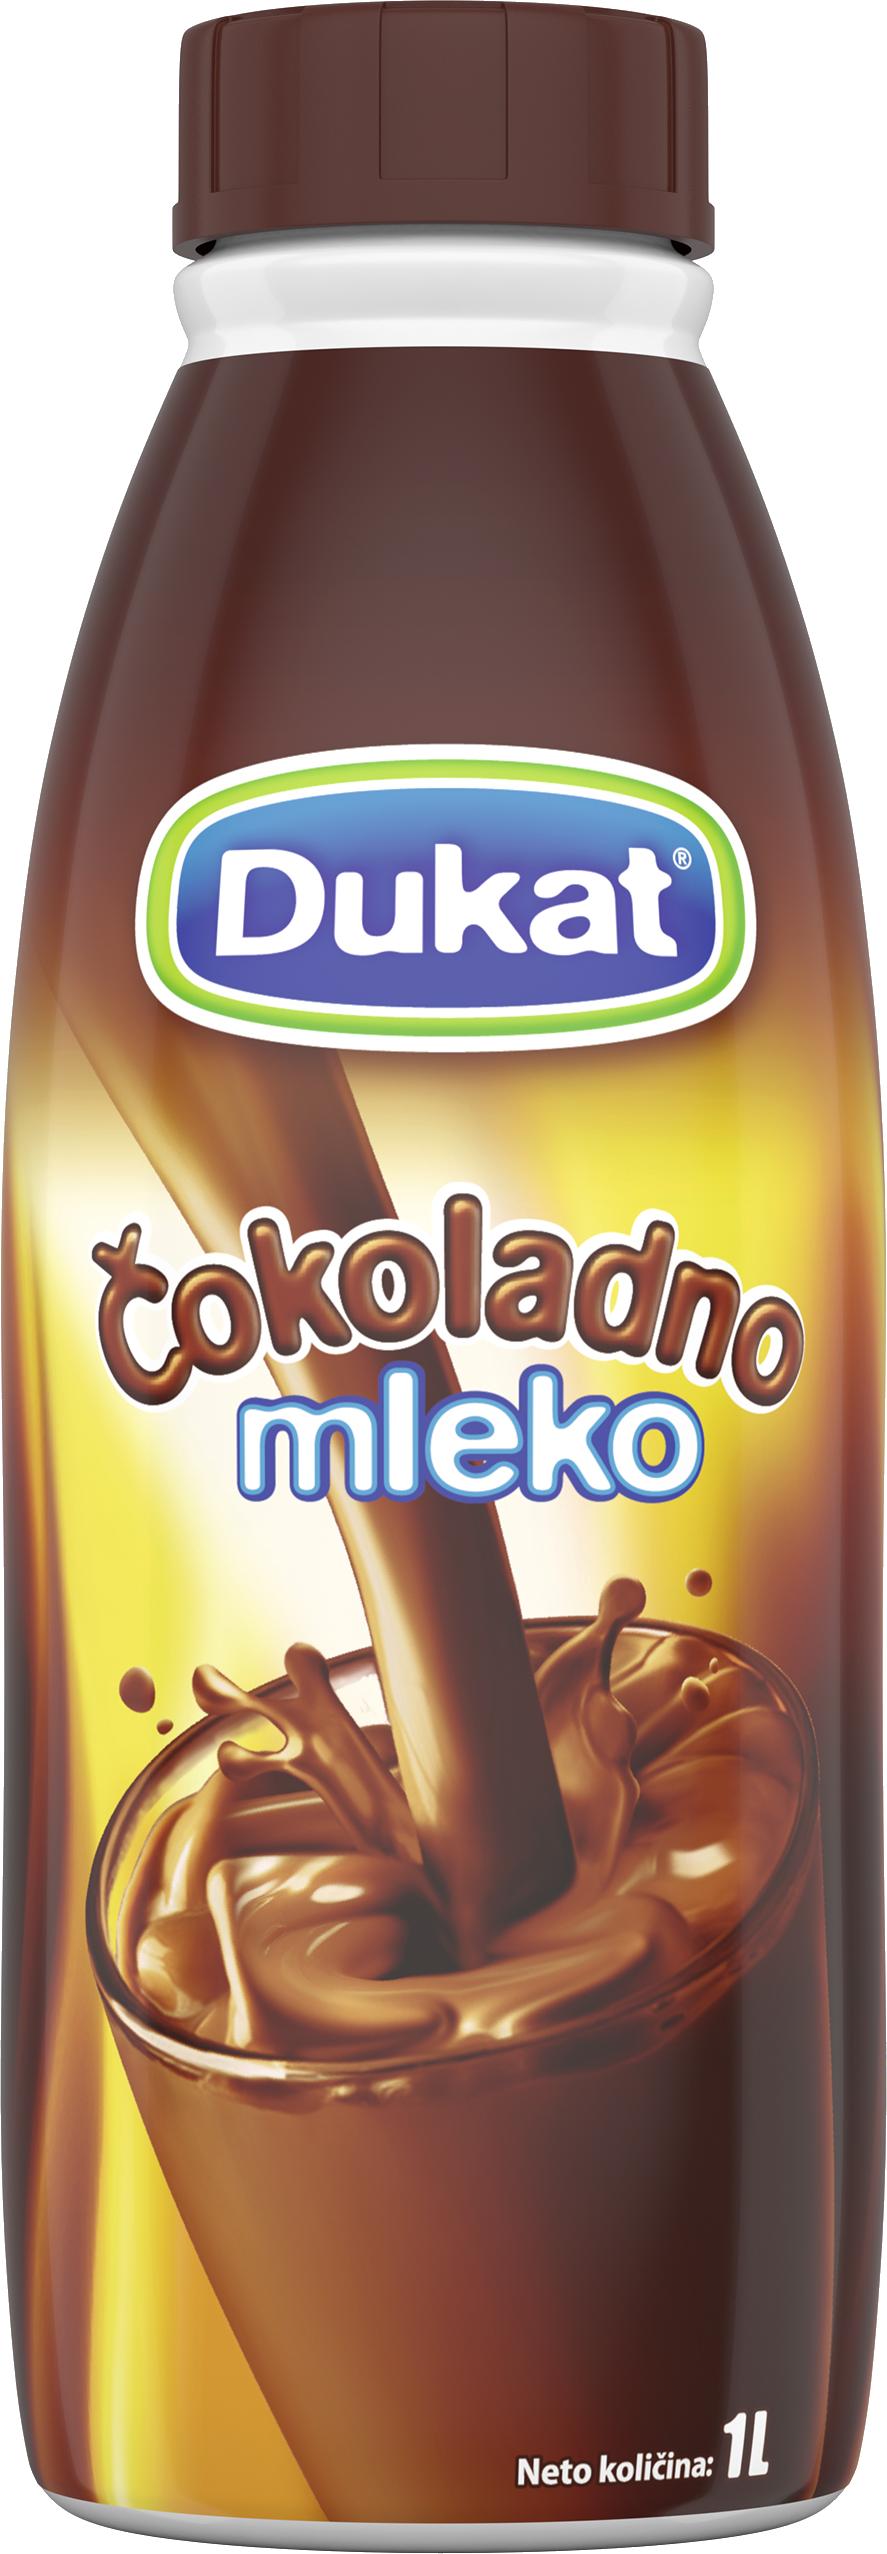 Slika za Čokoladno mleko Dukat 1l